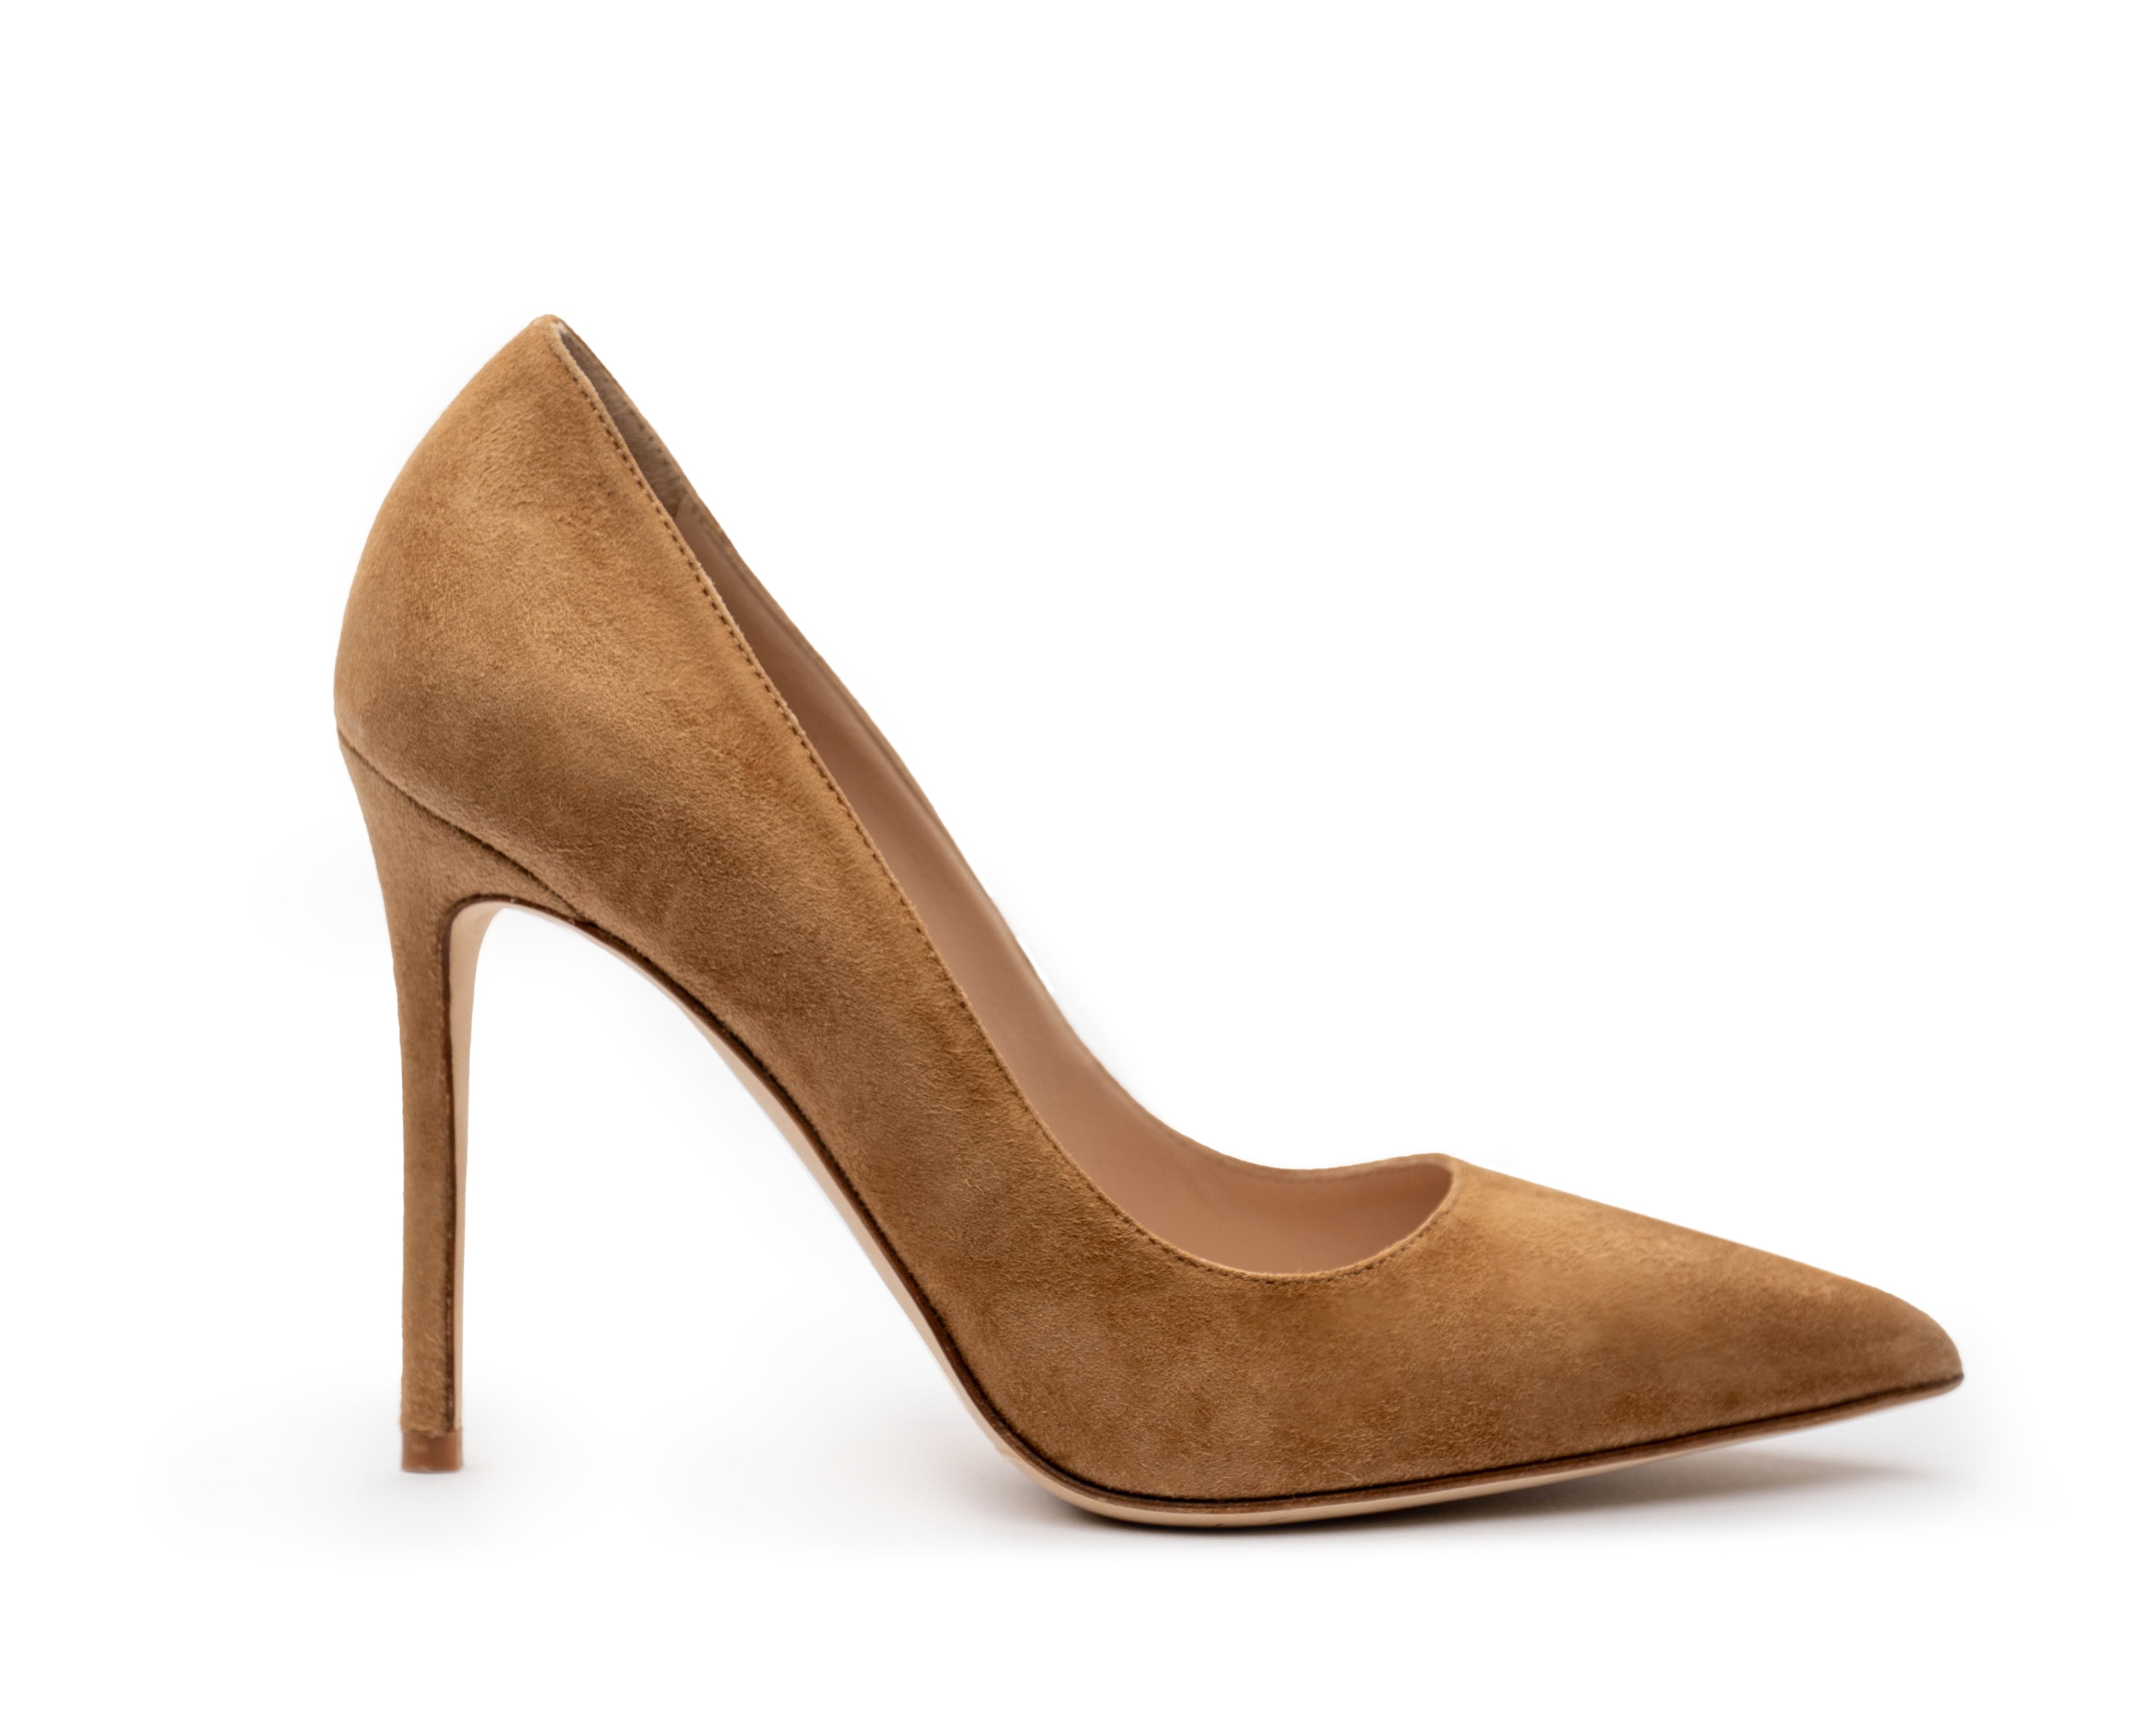 Women's nude pumps. Brown pumps. Golden high heels. Comfortable heelhs. Business High Heels. Office Pumps. Comfortable office heels.